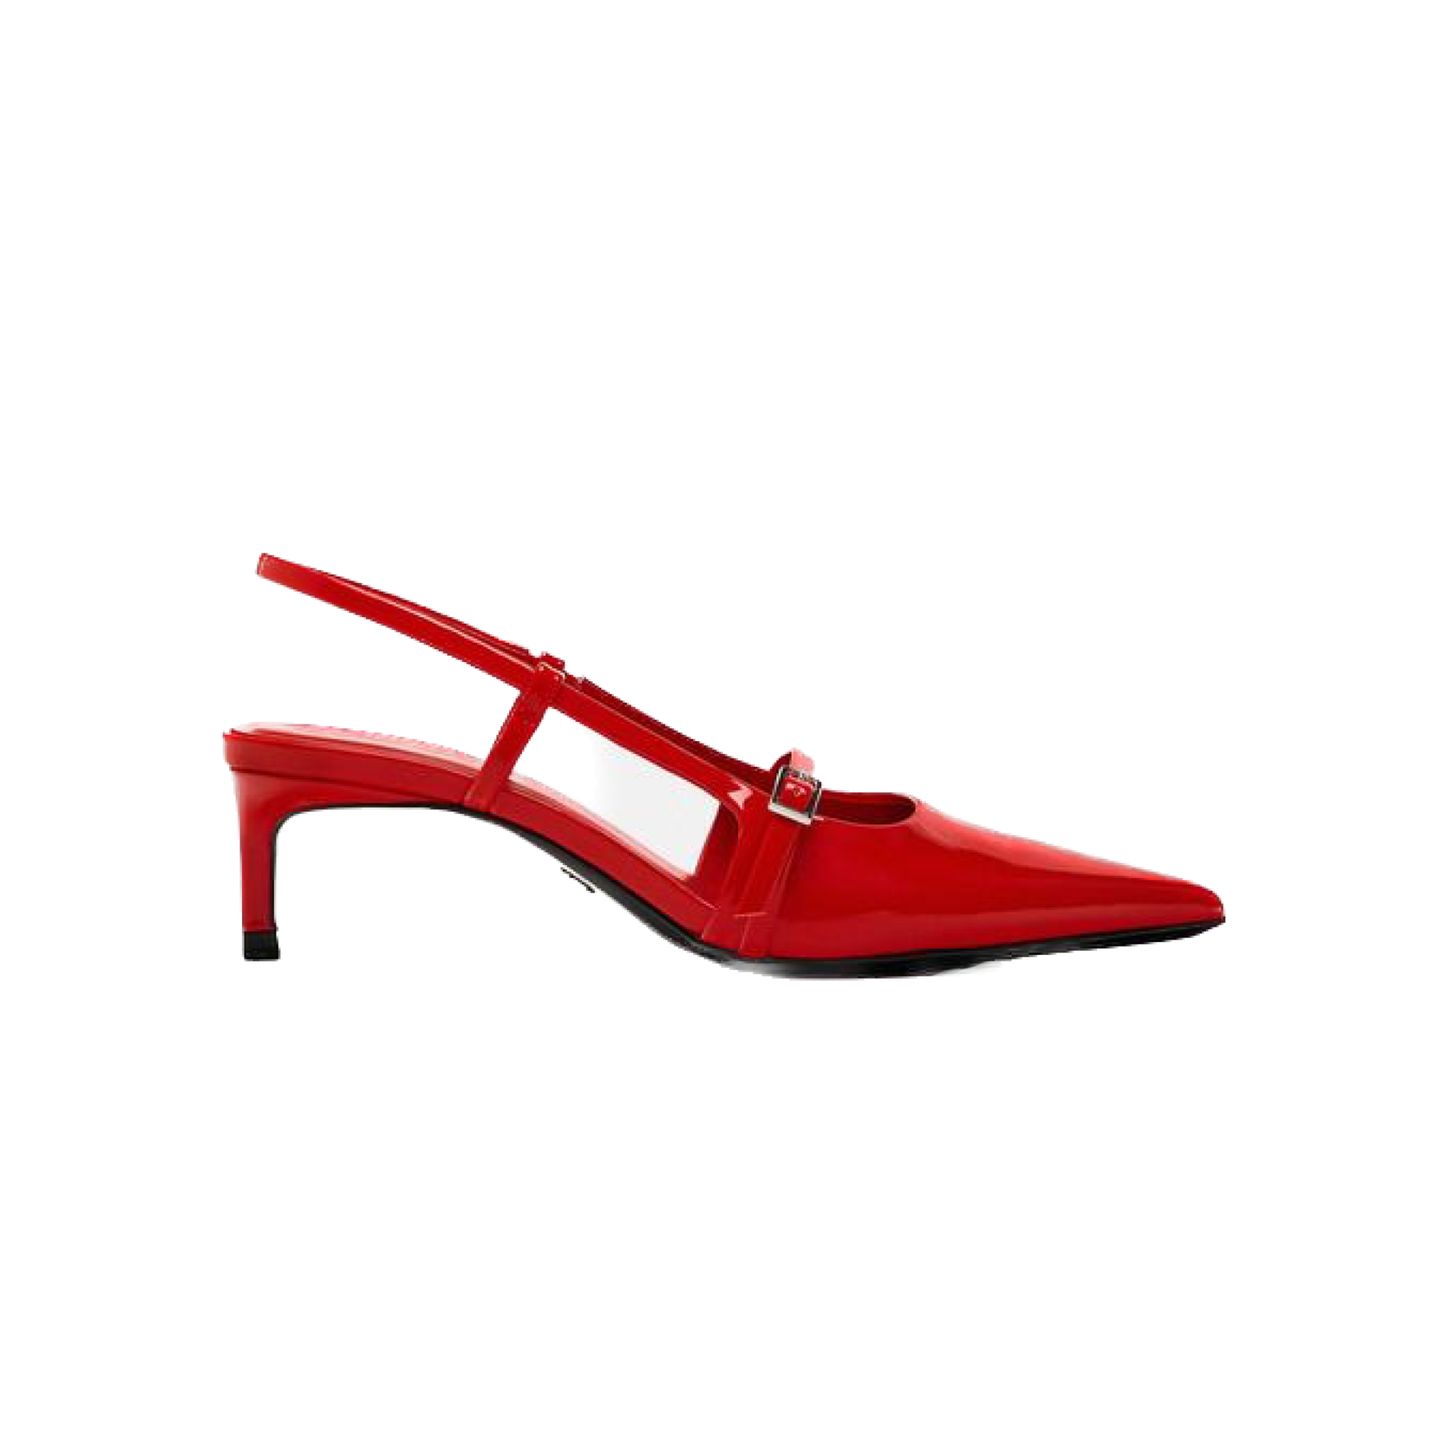 Das Modelabel Ganni hat mit ihren roten Schnallen-Slingback-Schuhen einen Trend ausgelöst, eine stylische Alternative gibt es bei Zara. Die Schuhe zeichnen sich durch einen kleinen und bequemen Kitten-Heel aus und sind die besten Freunde zu roten und schwarzen Kleidern. Slingback-Pumps, ca. 40 Euro. 